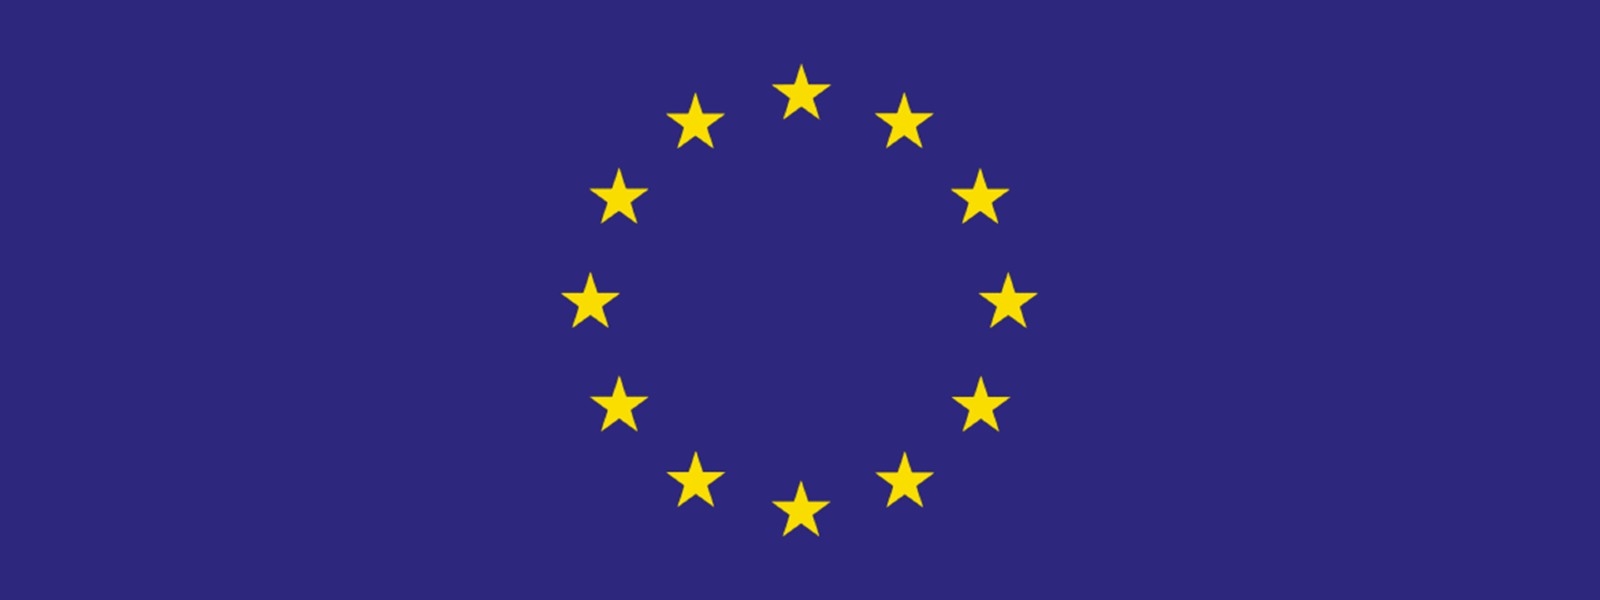 Nové energetické štítky podle nařízení eu